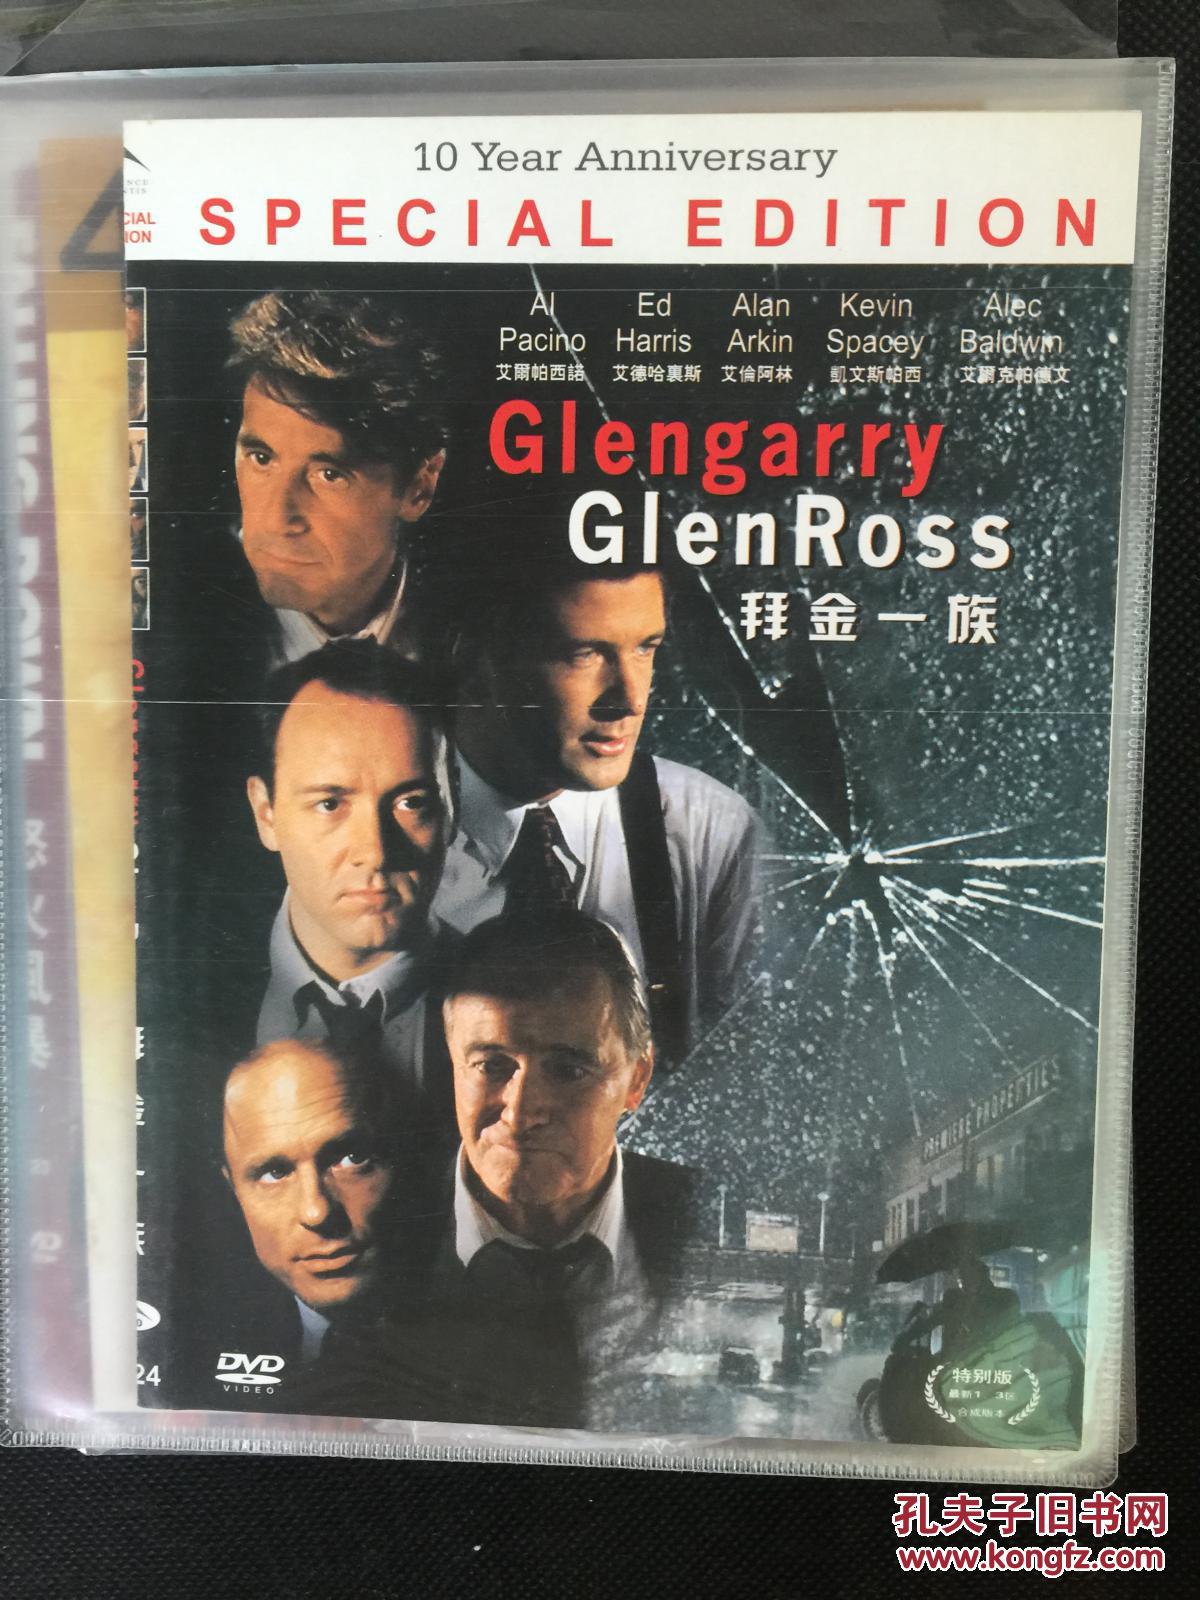 弗雷】大亨游戏 Glengarry Glen Ross (1992) 阿尔·帕西诺